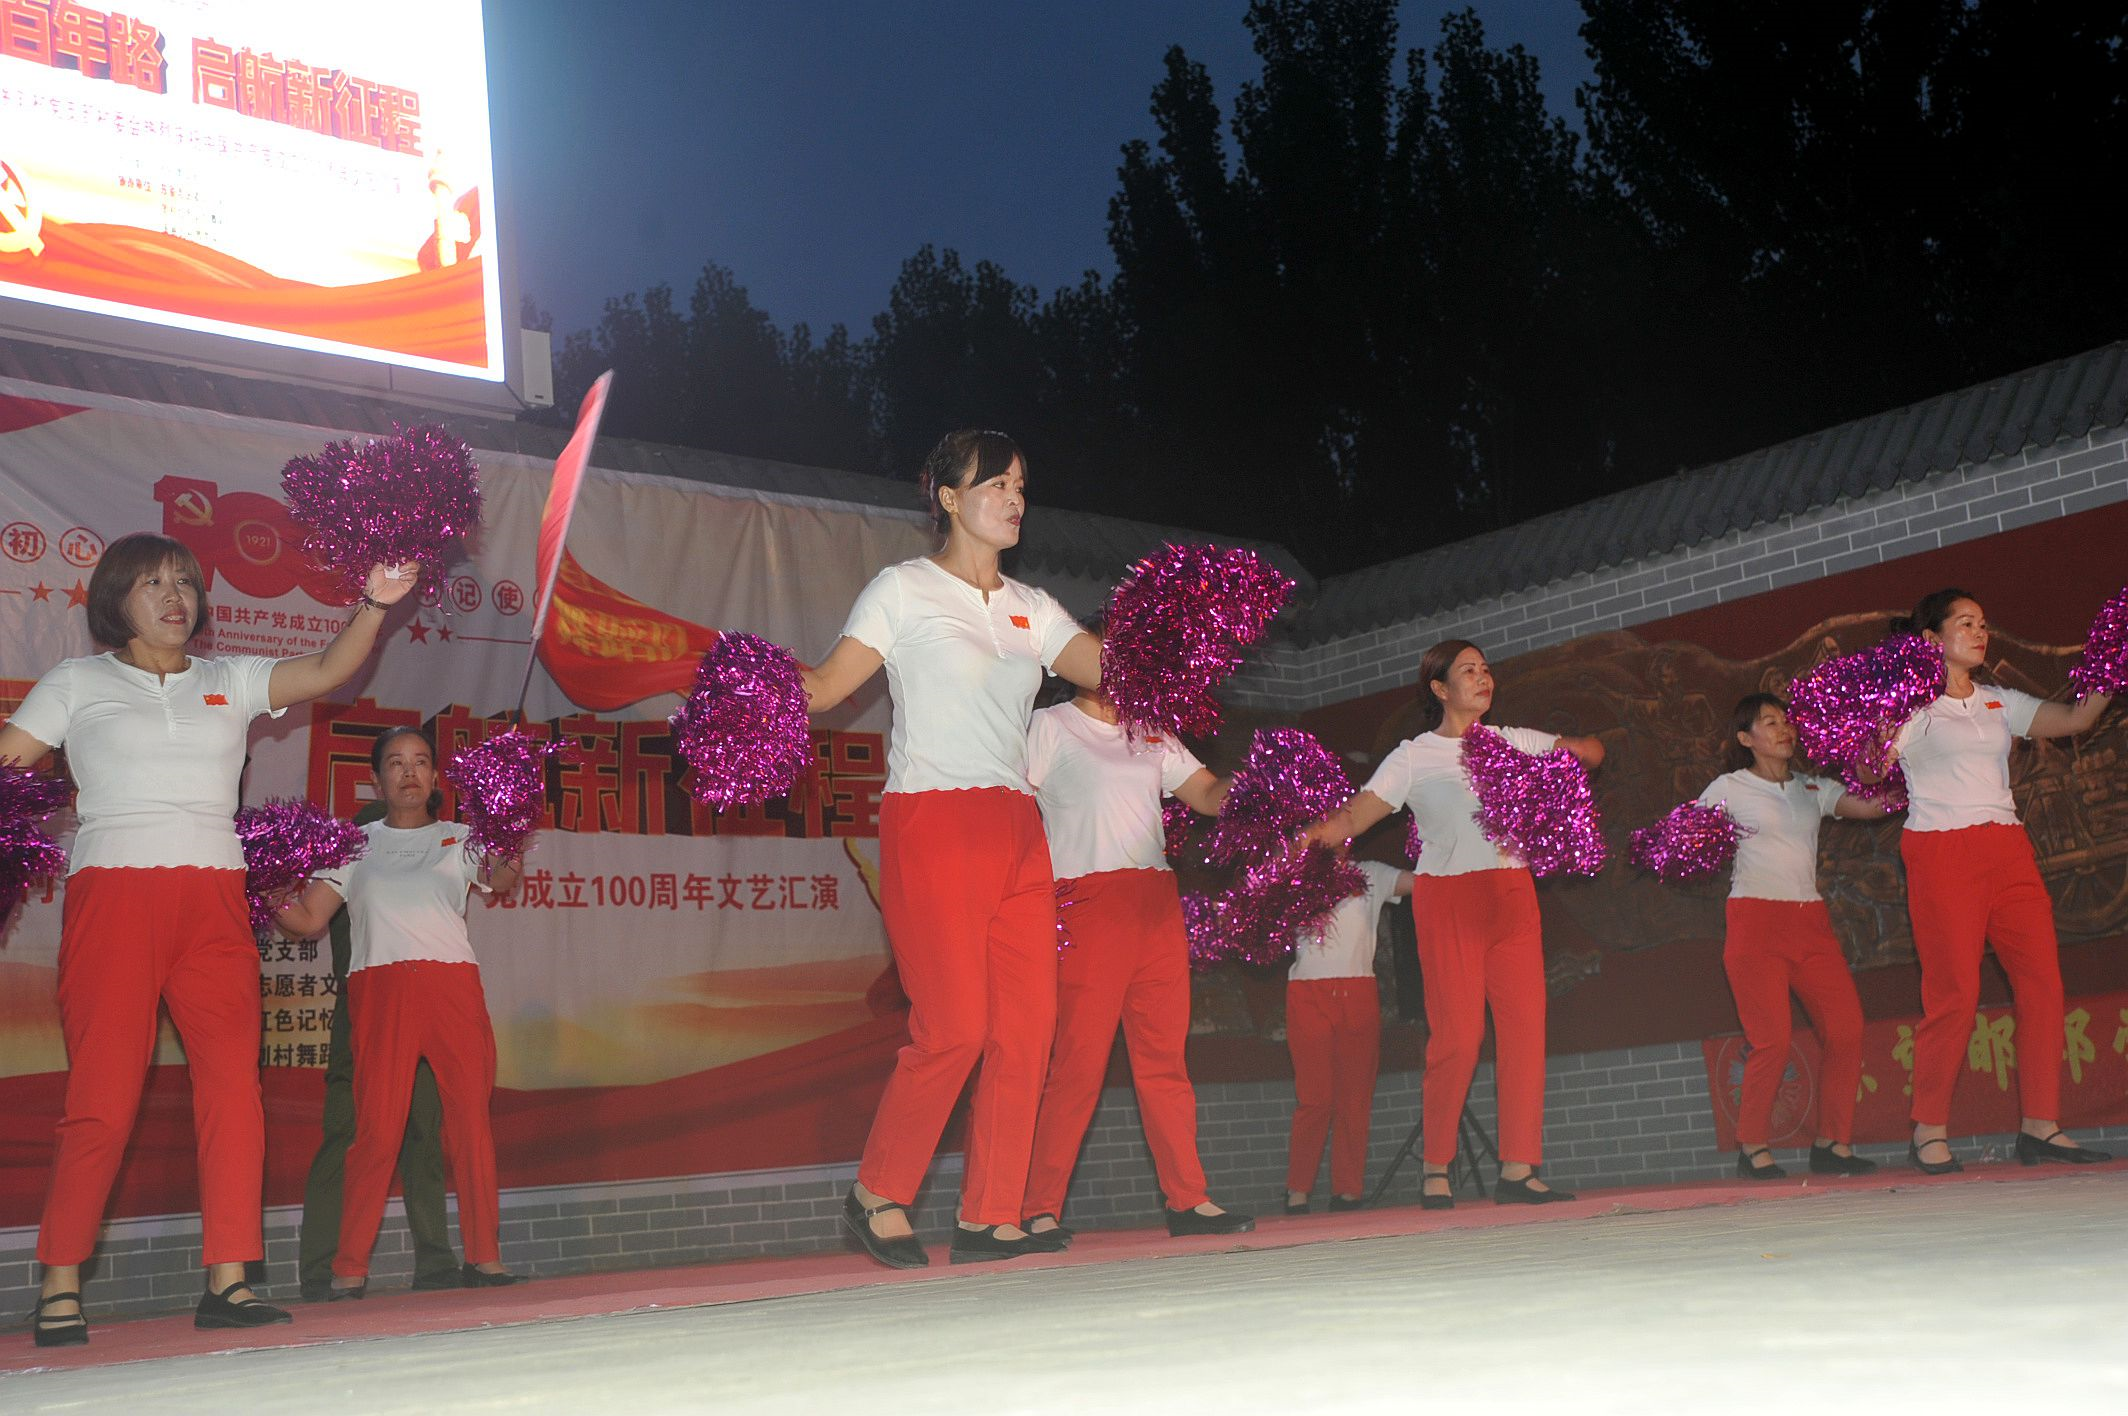 邯郸市邯山区刘村举办庆祝建党百年歌舞晚会